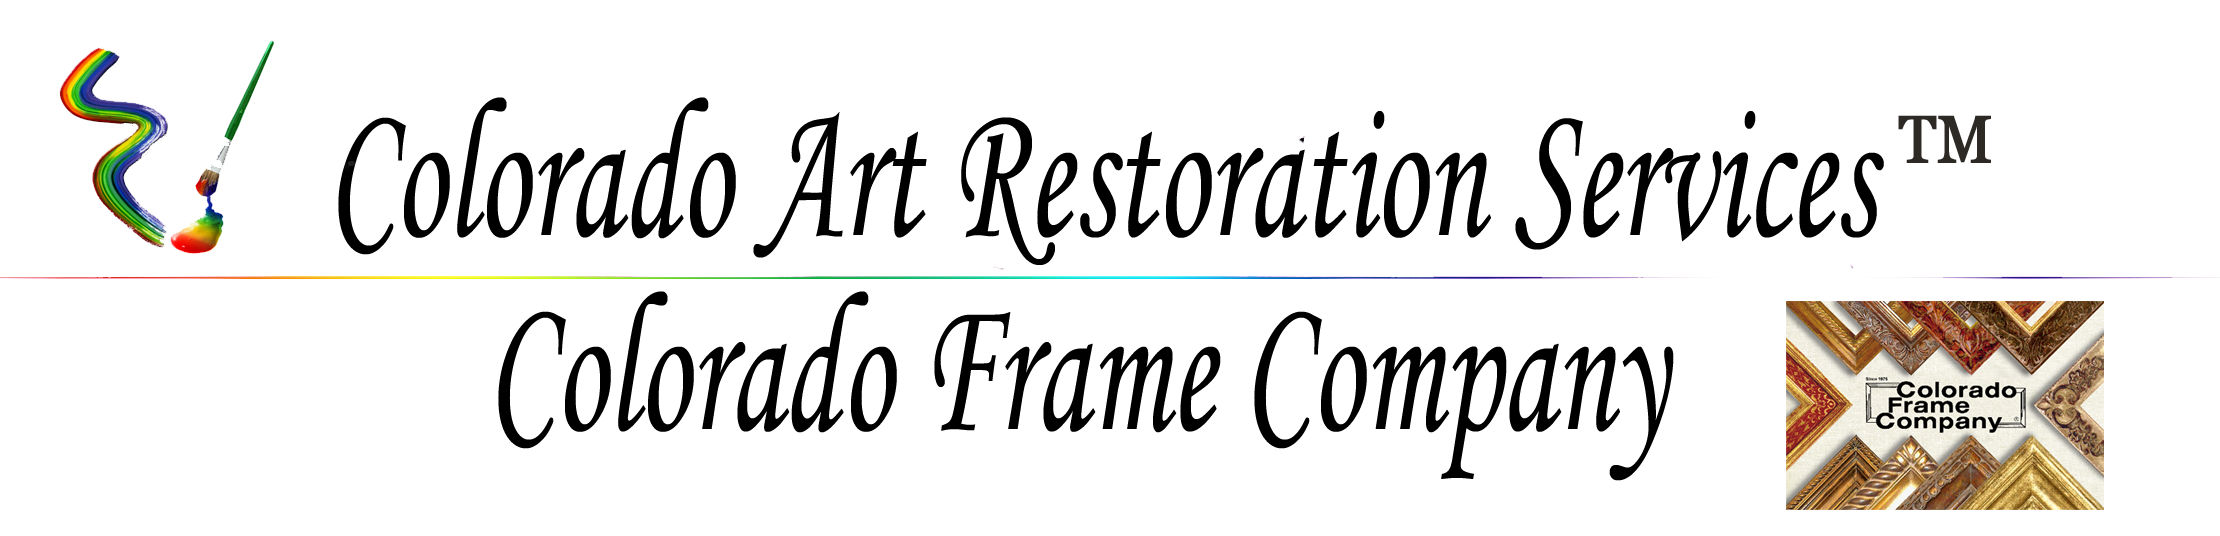 Colorado Art Restoration & Colorado Frame Company